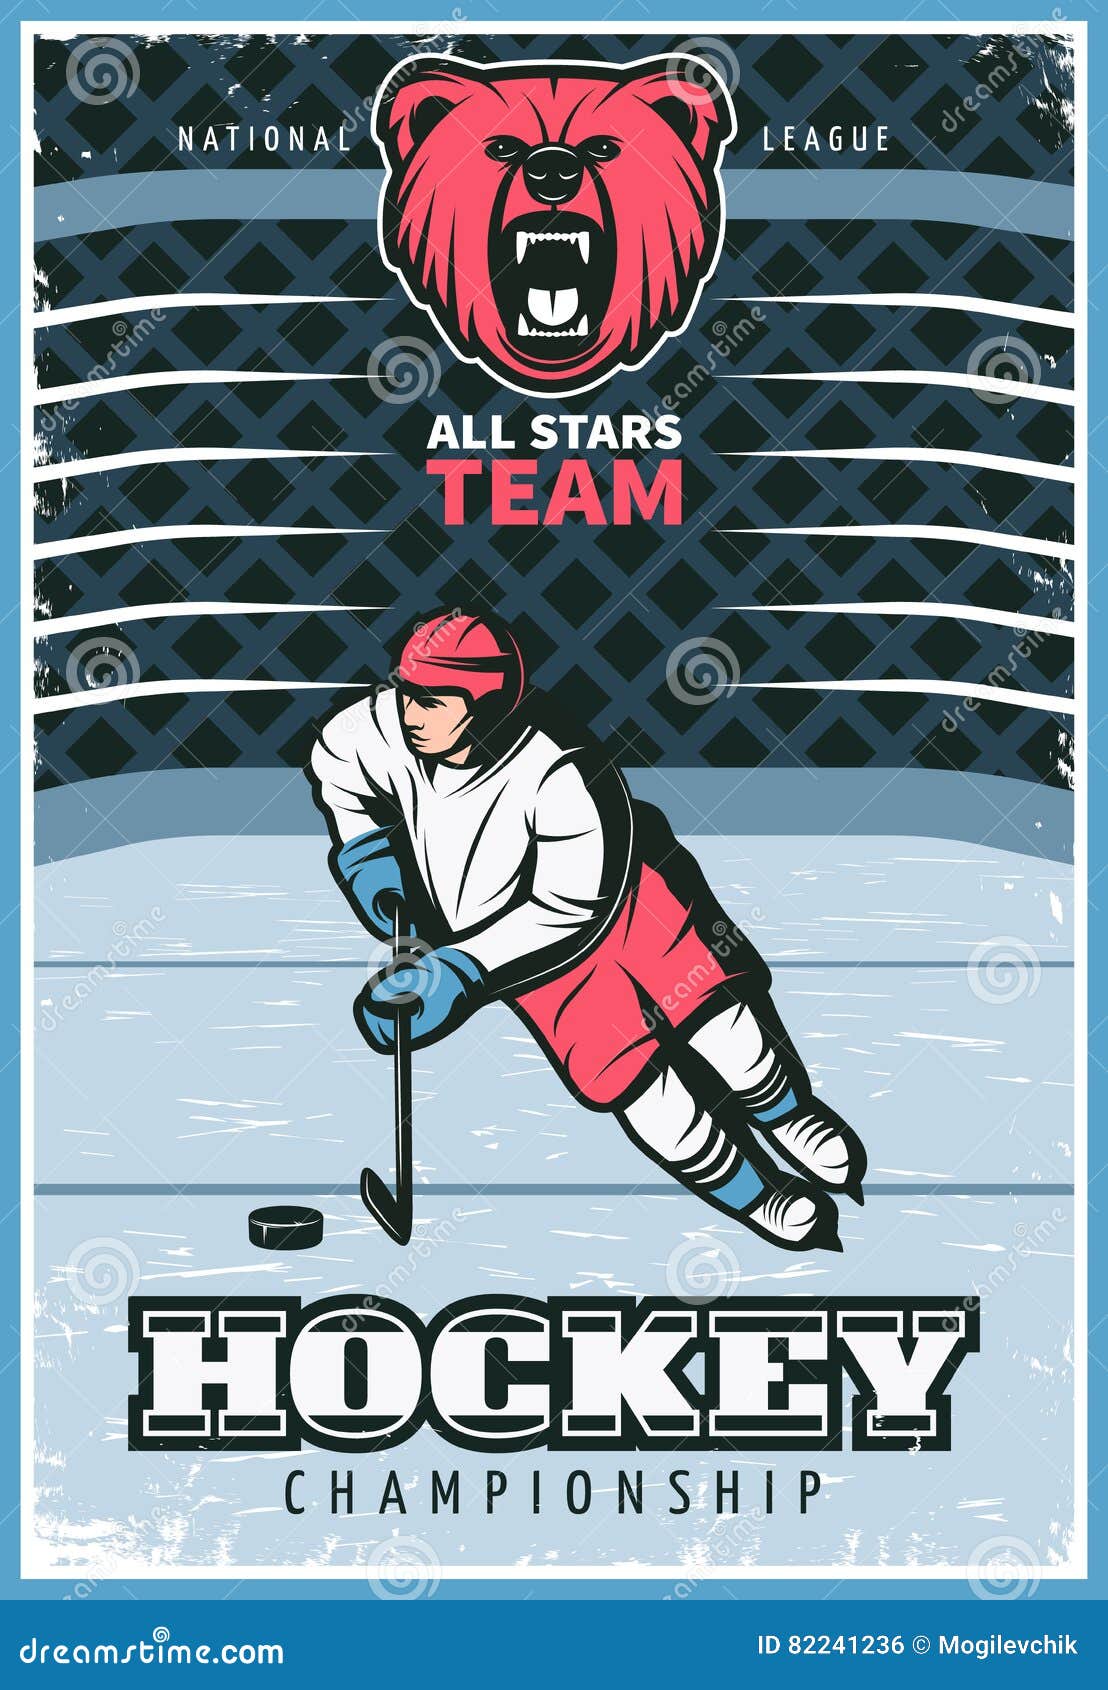 Cartel del vintage de la liga de hockey. Todo el cartel de la publicidad del viejo estilo del campeonato del equipo de hockey de las estrellas con imagen de carácter del jugador en el ejemplo del vector de la pista de hielo